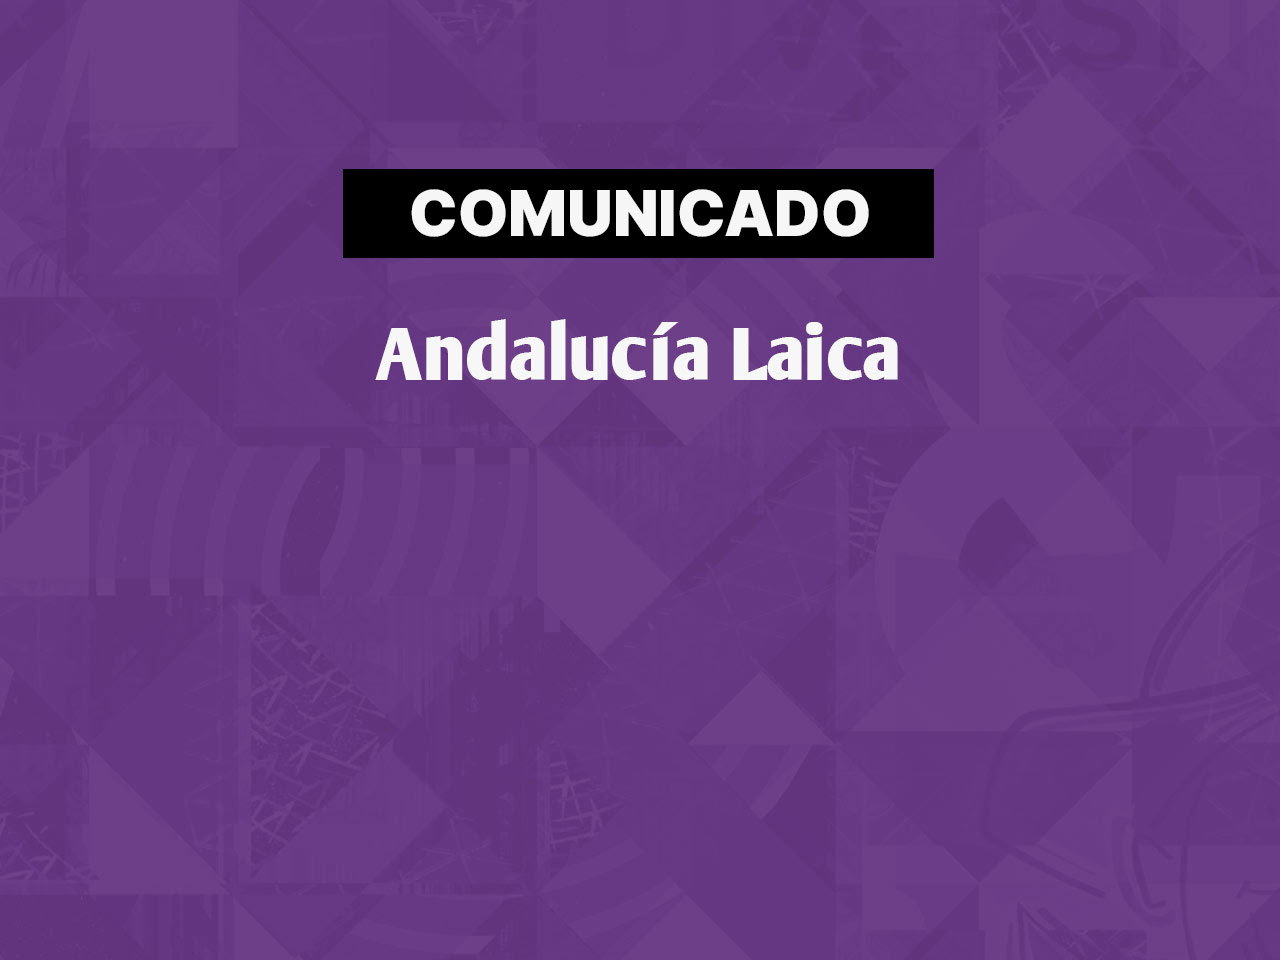 Rueda de prensa de Andalucía Laica el 1 de octubre a las 11h en Córdoba ante el comienzo del curso político